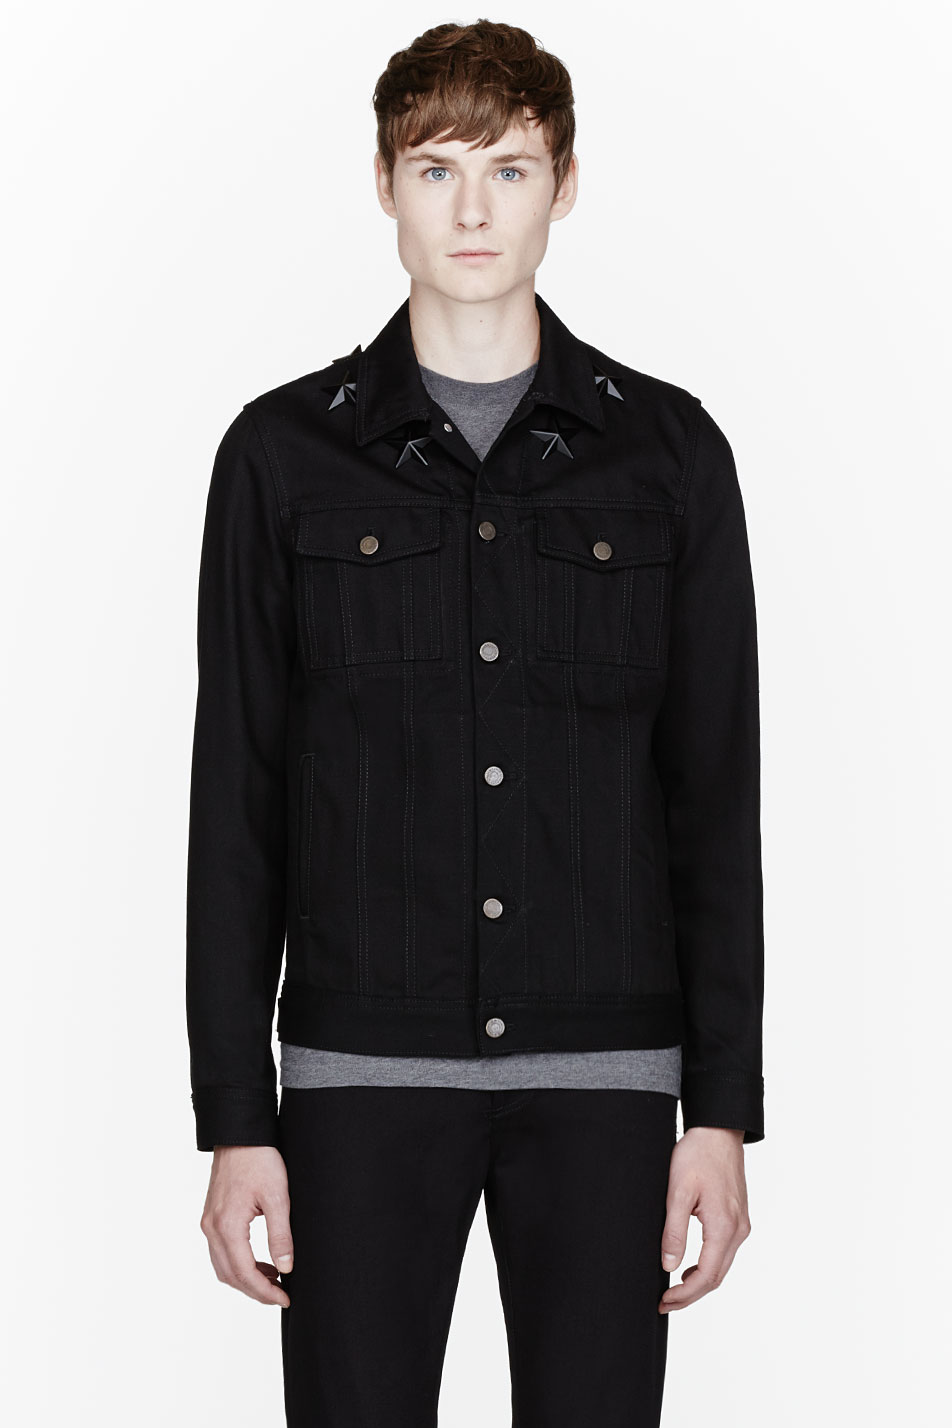 Lyst - Givenchy Black Star Studded Denim Jacket in Black for Men